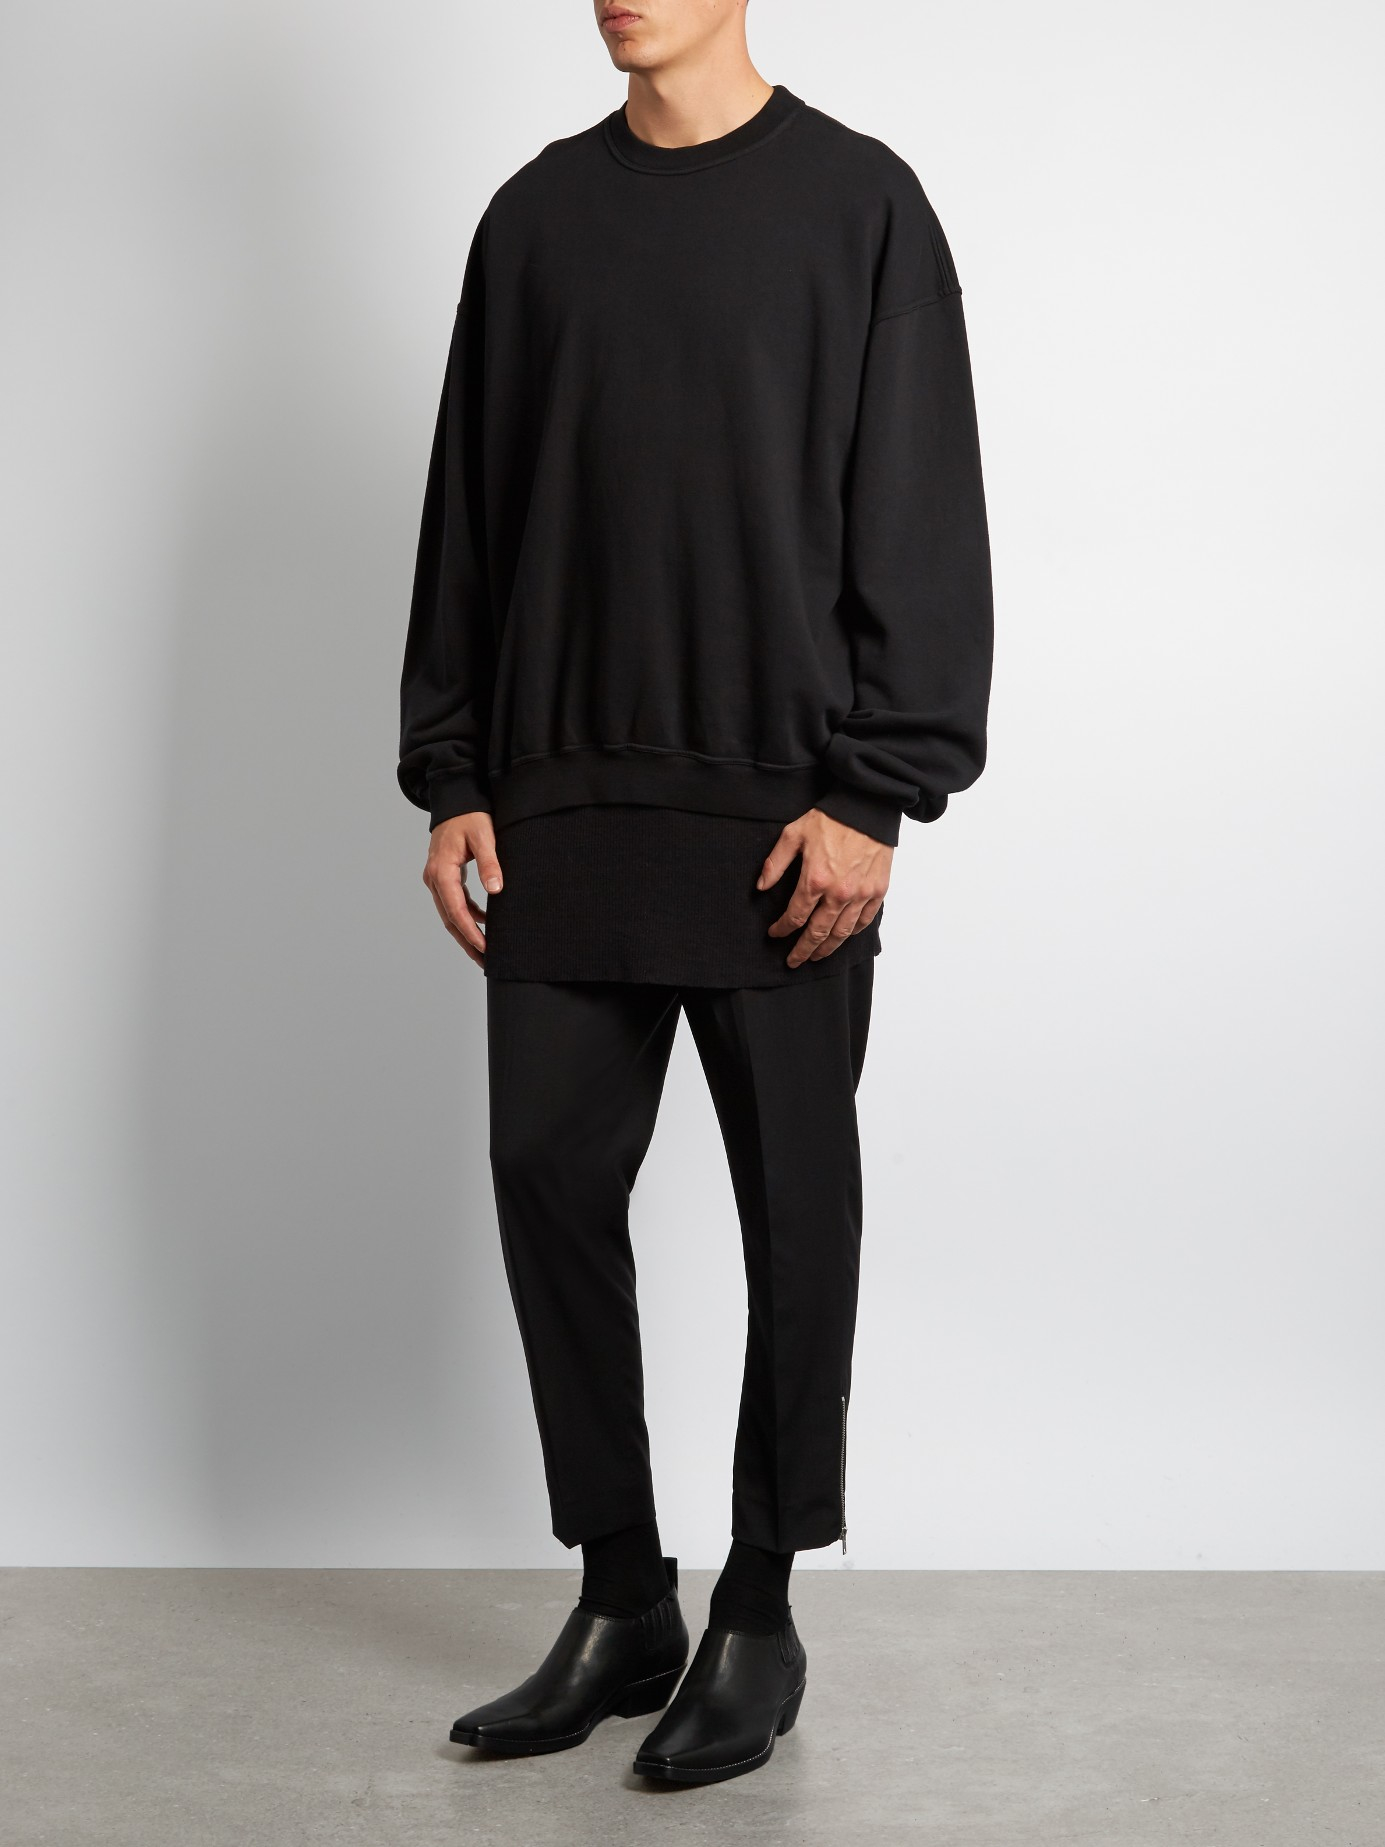 Haider Ackermann Perth Crew-neck Cotton Sweatshirt in Black for Men - Lyst